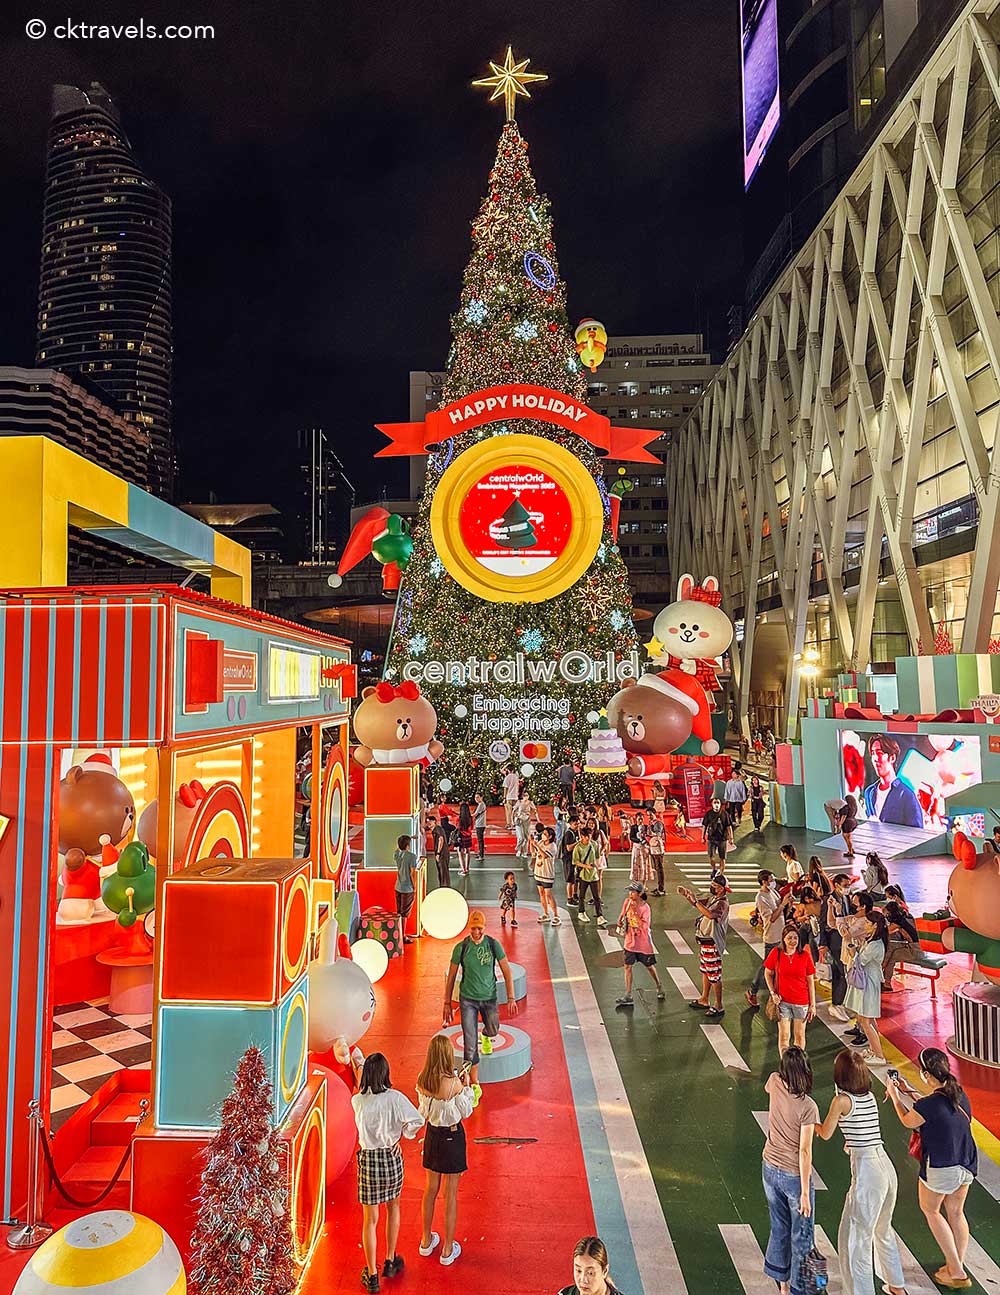 centralwOrld (Rama I Road) Bangkok mall at Christmas